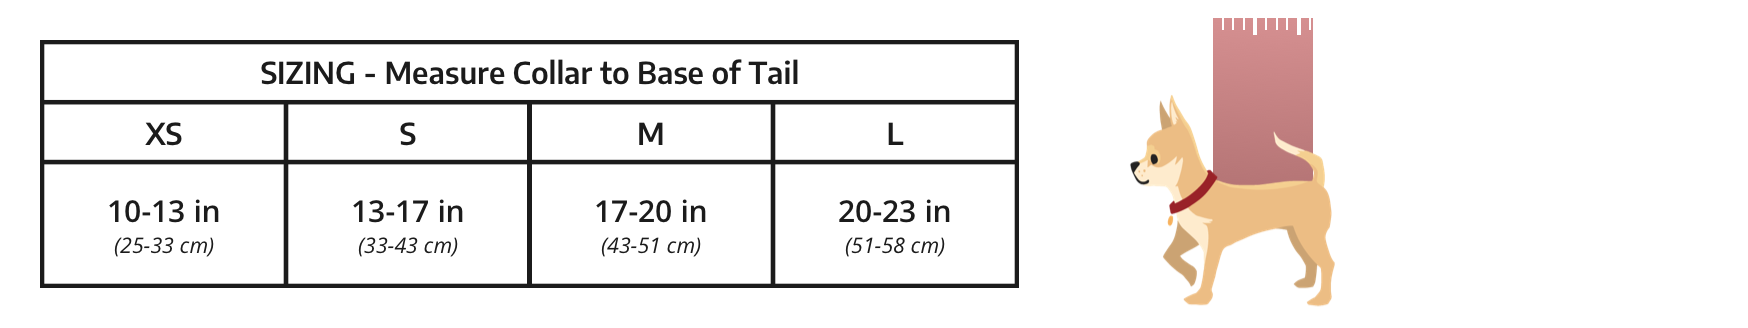 Taille AIR 2, mesurant du col à la base de la queue : XS 10-13 pouces ; S 13-17 pouces ; M 17-20 pouces ; L 20-23 pouces.